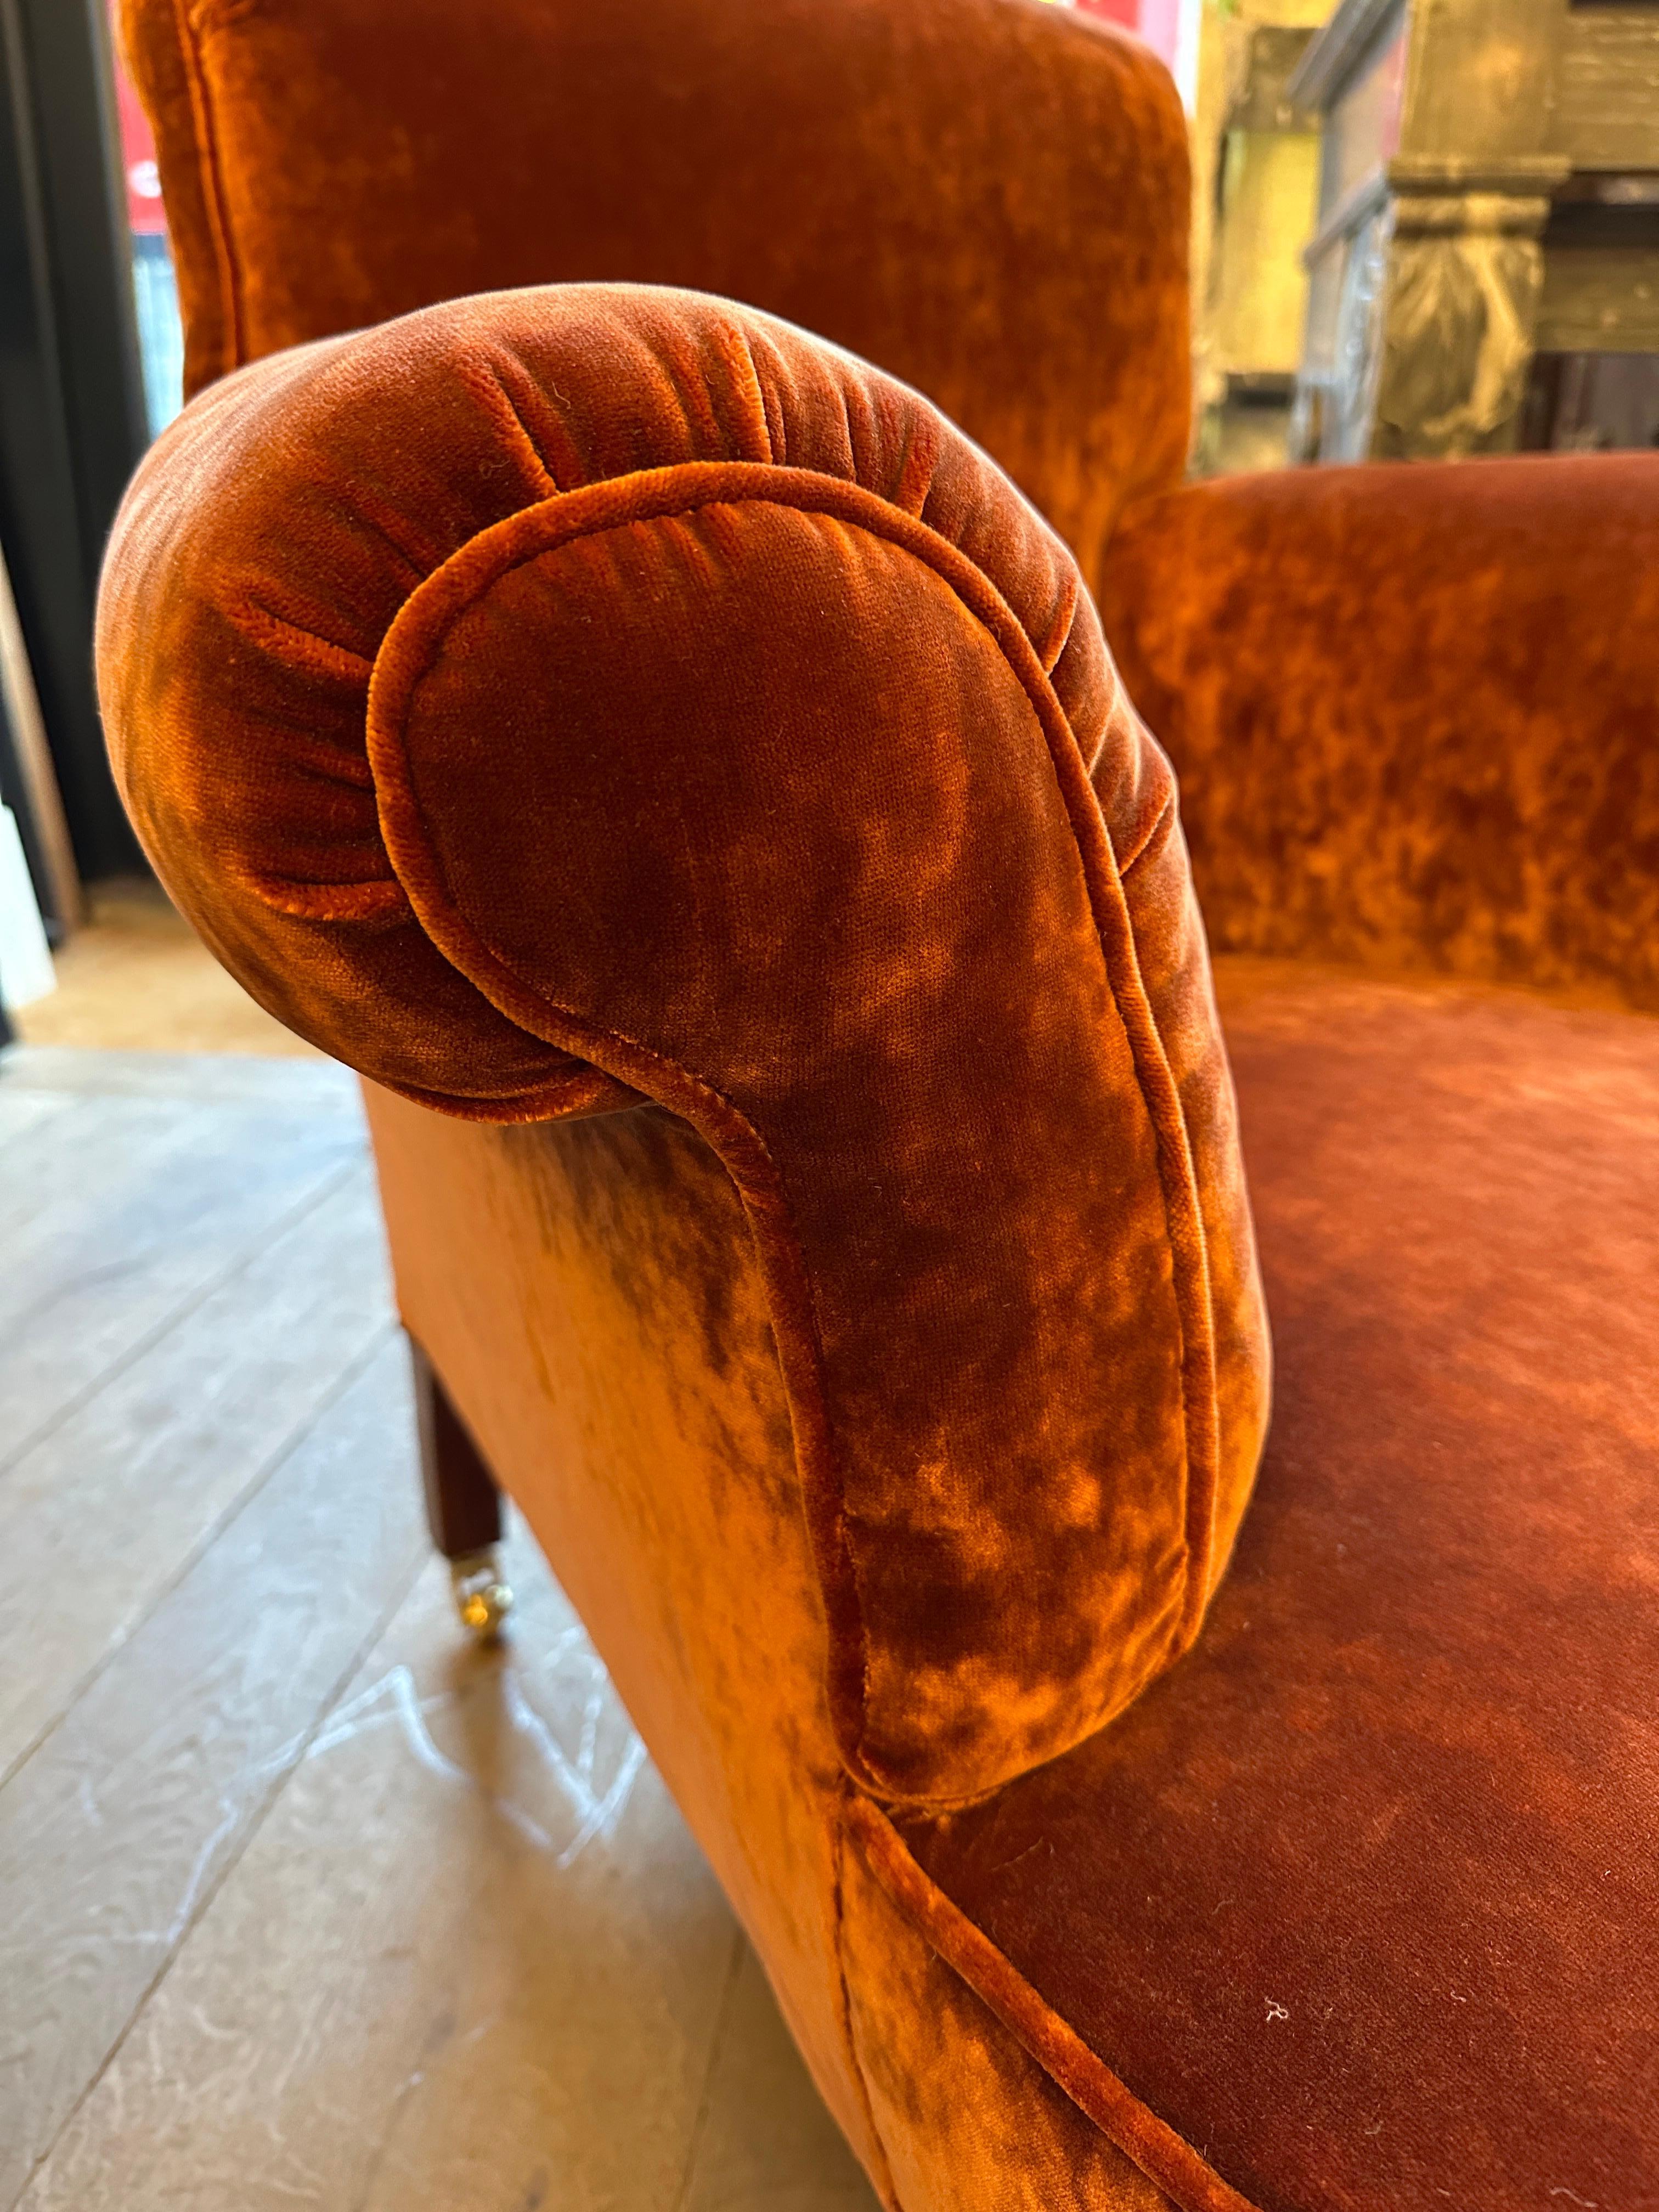 Ein großer viktorianischer Sessel oder Klubsessel, neu gepolstert mit einem zerknitterten, bernsteinfarbenen Samt. Die Rückenlehne und die Armlehnen sind mit Paspelierung versehen, neue Messingrollen mit Nietenbeinen. Der zerknitterte Samt sorgt für